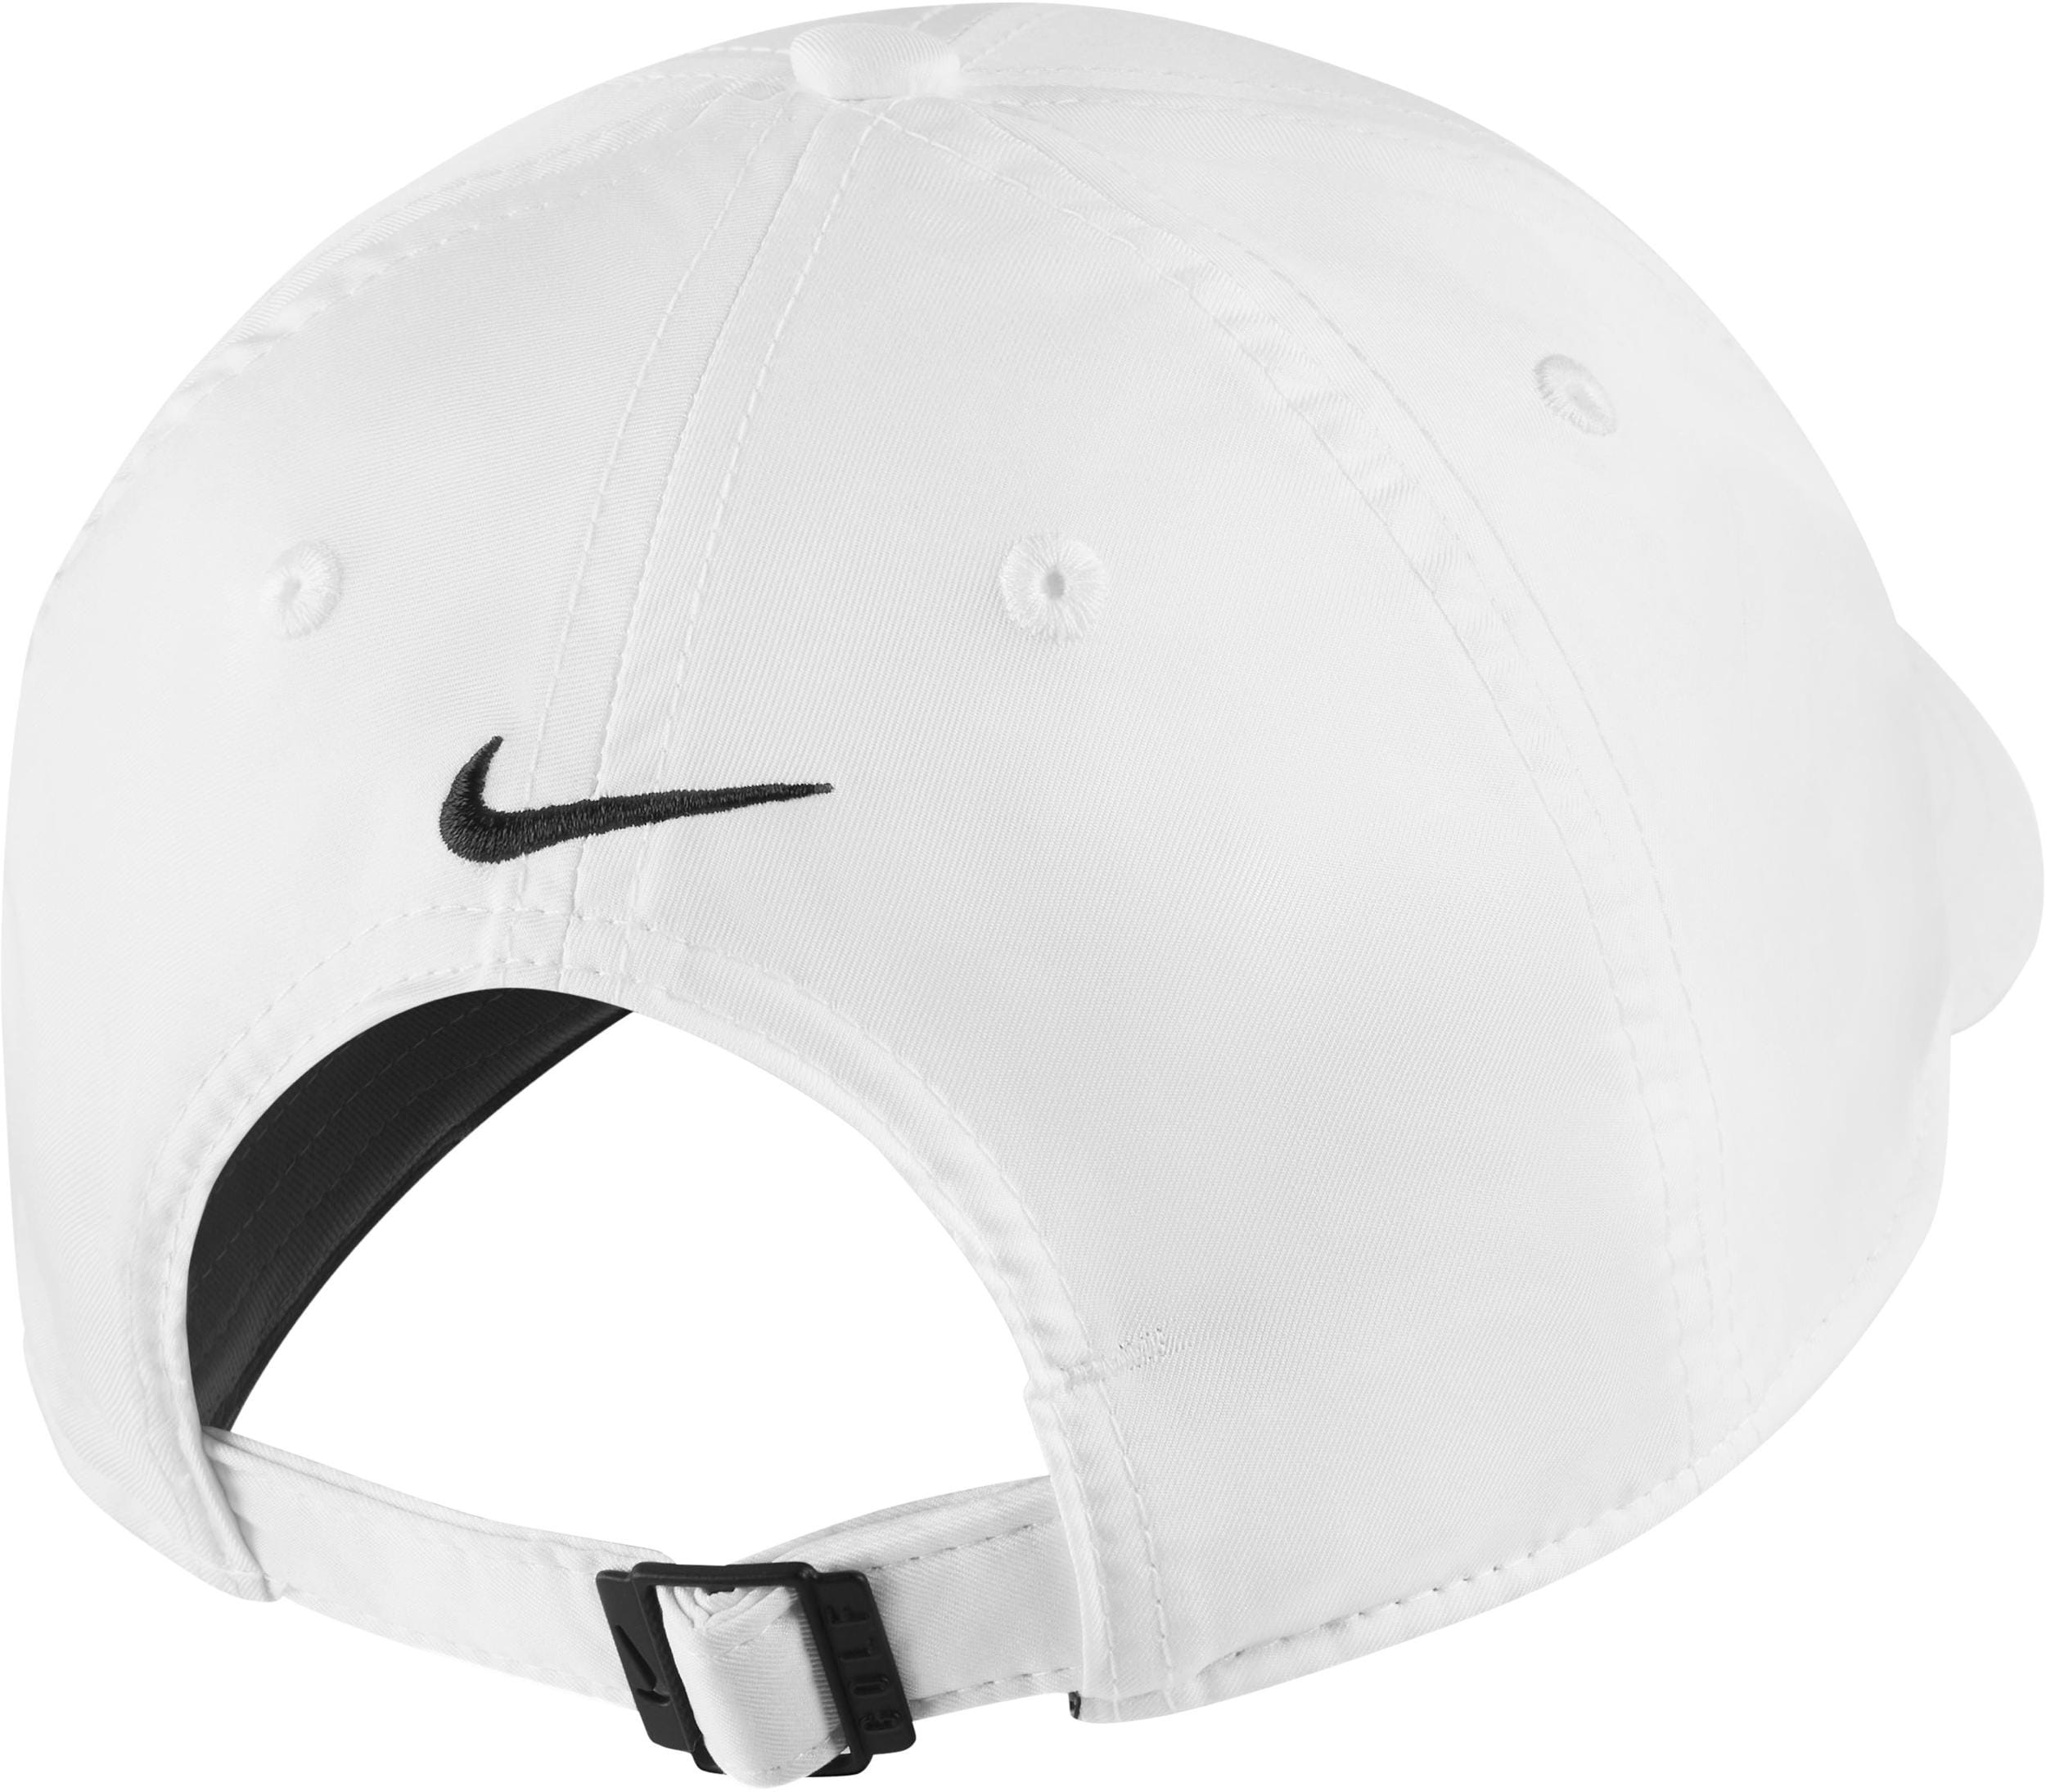 Nike L91 TECH Cap